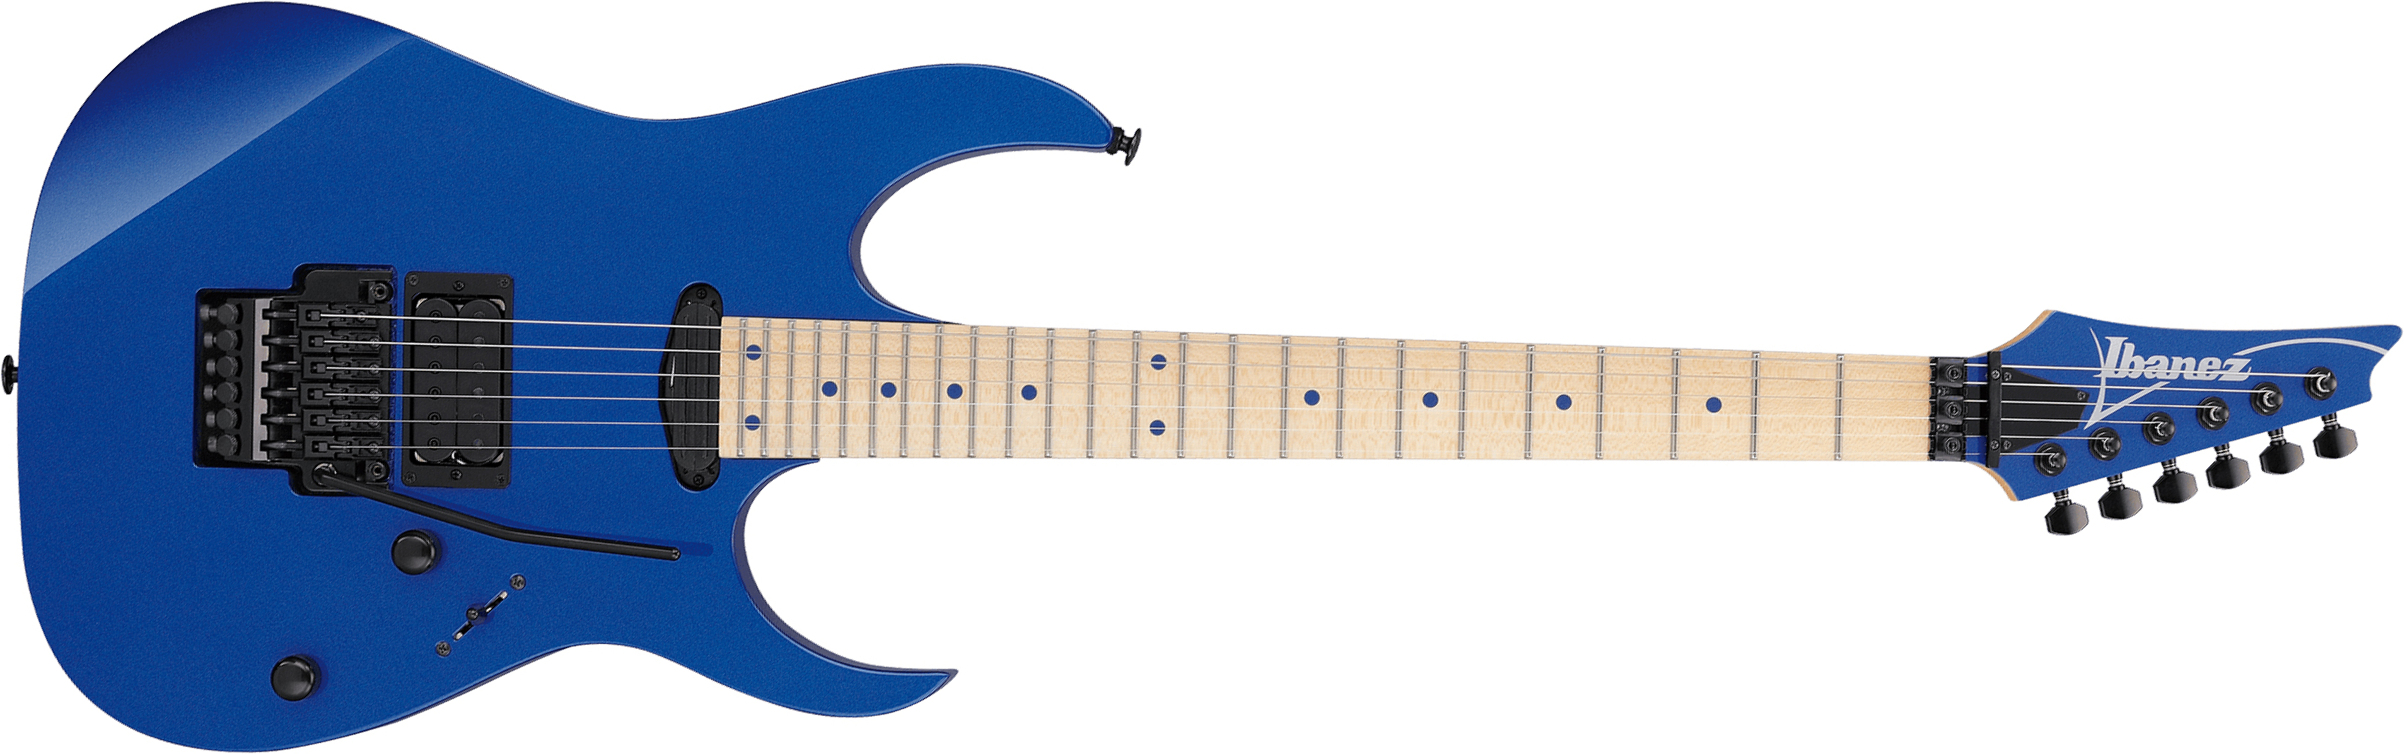 Ibanez Rg565 Lb Genesis Jap Hst Fr Mn - Laser Blue - Guitarra eléctrica con forma de str. - Main picture